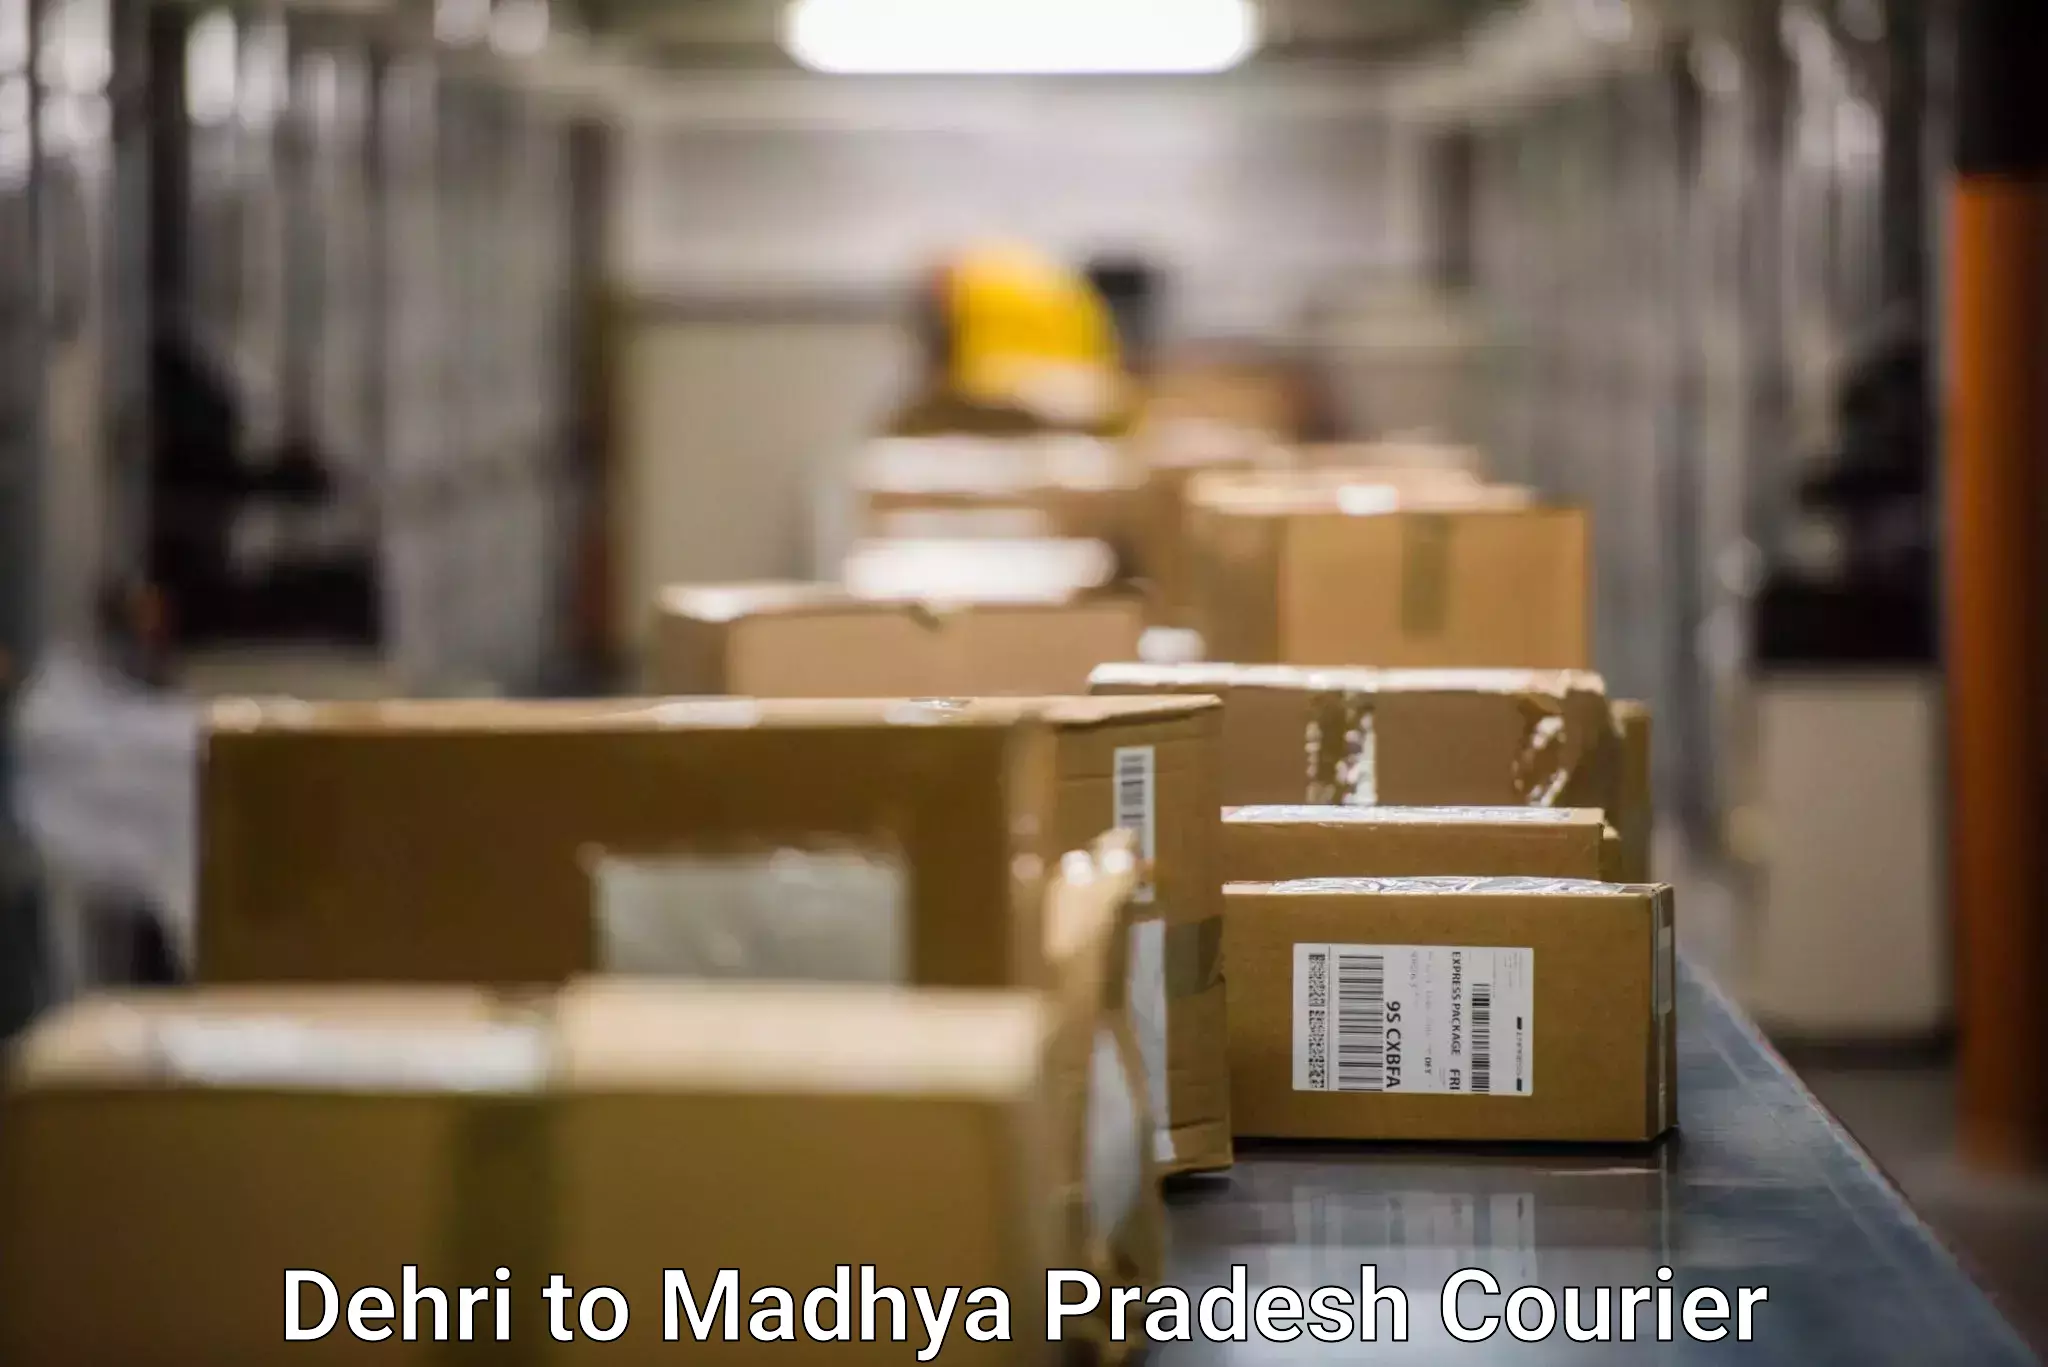 Professional courier handling Dehri to Begumganj